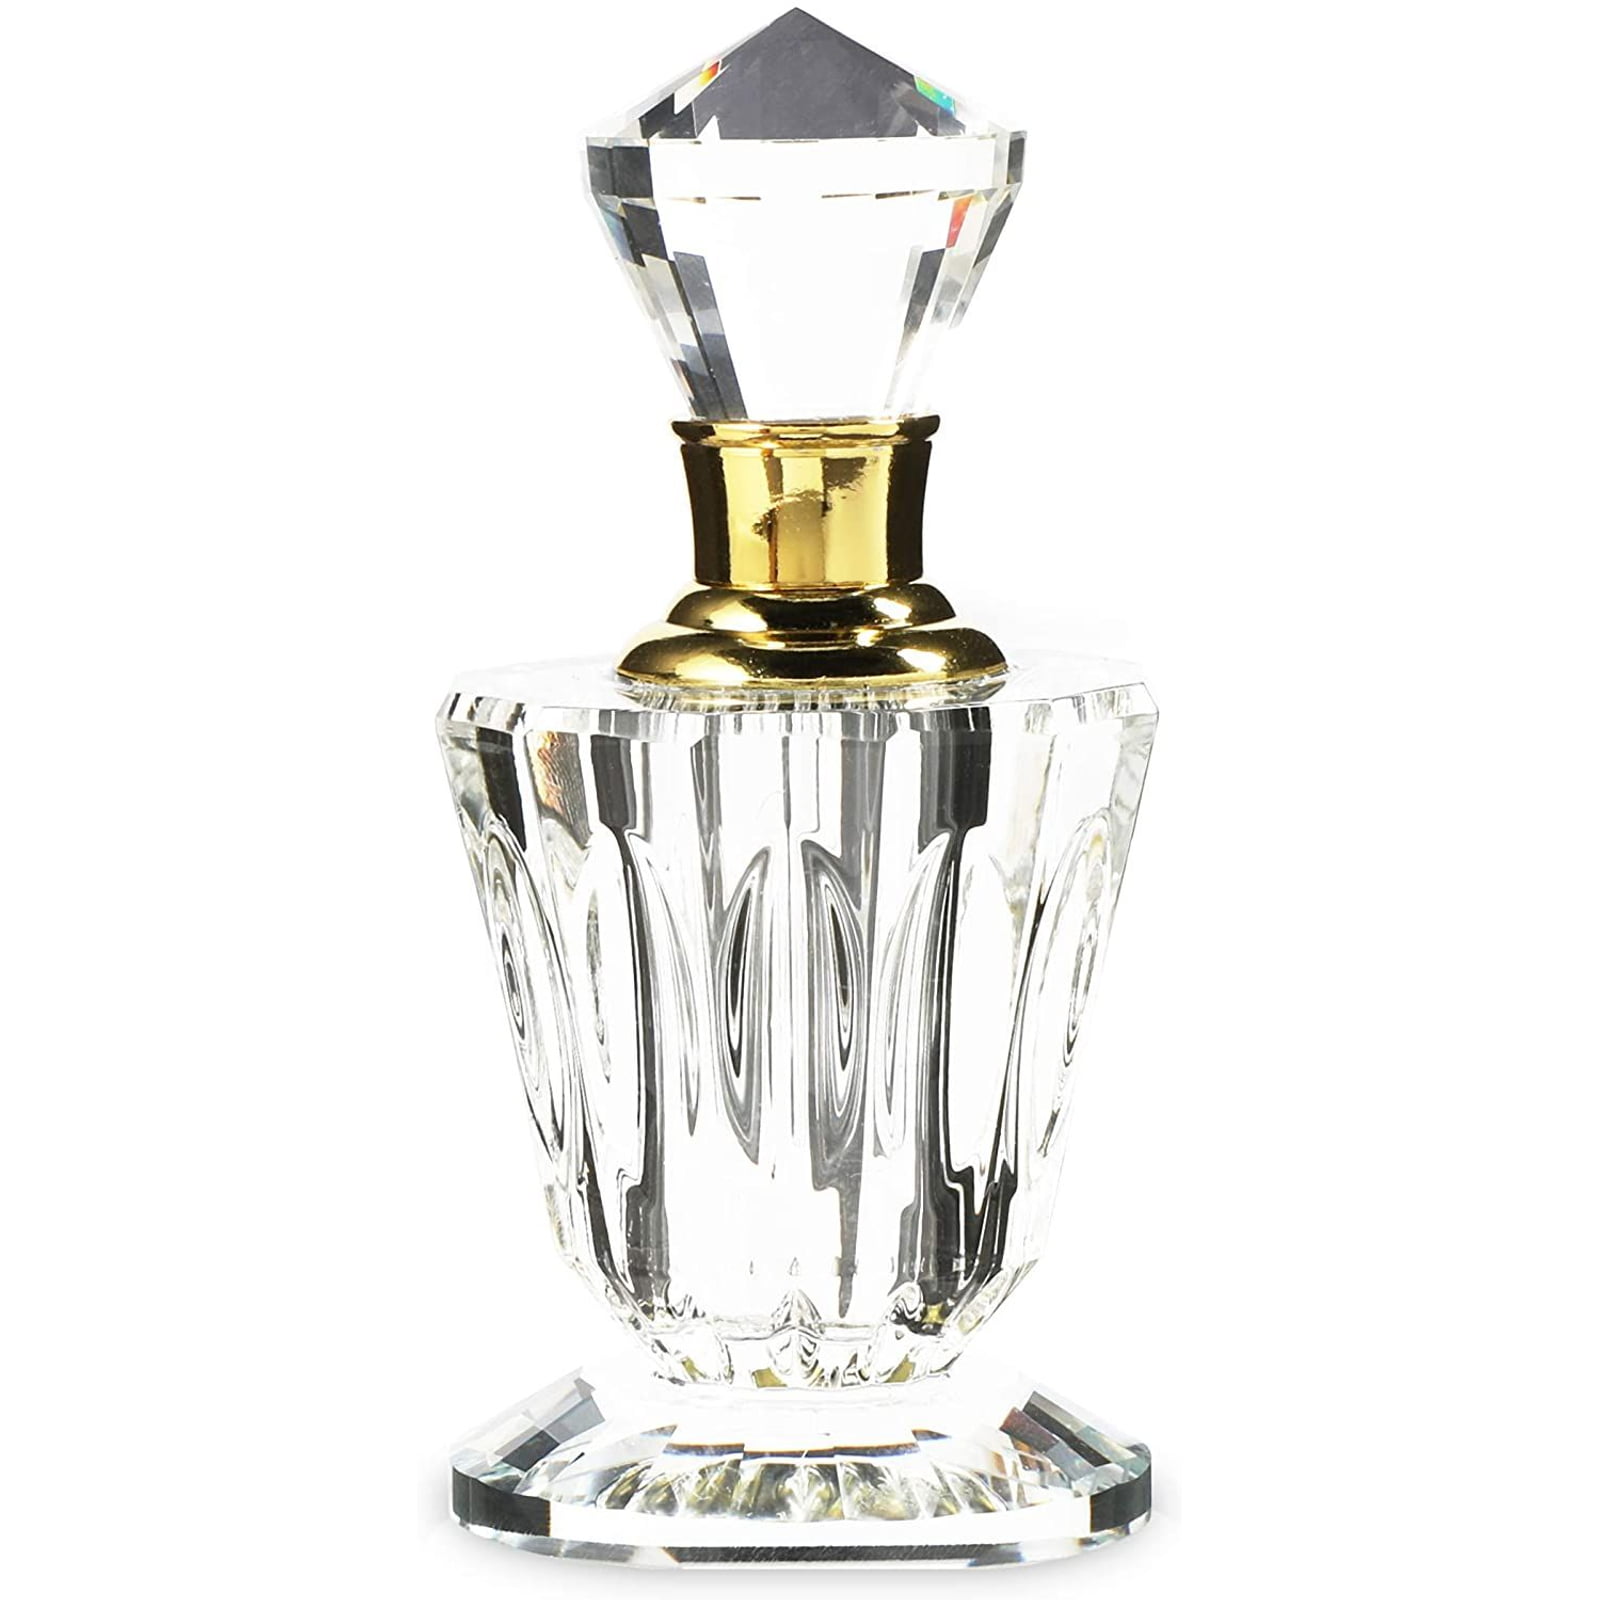  KIT TOWN Refillable Perfume Bottle 2 Pack Glass